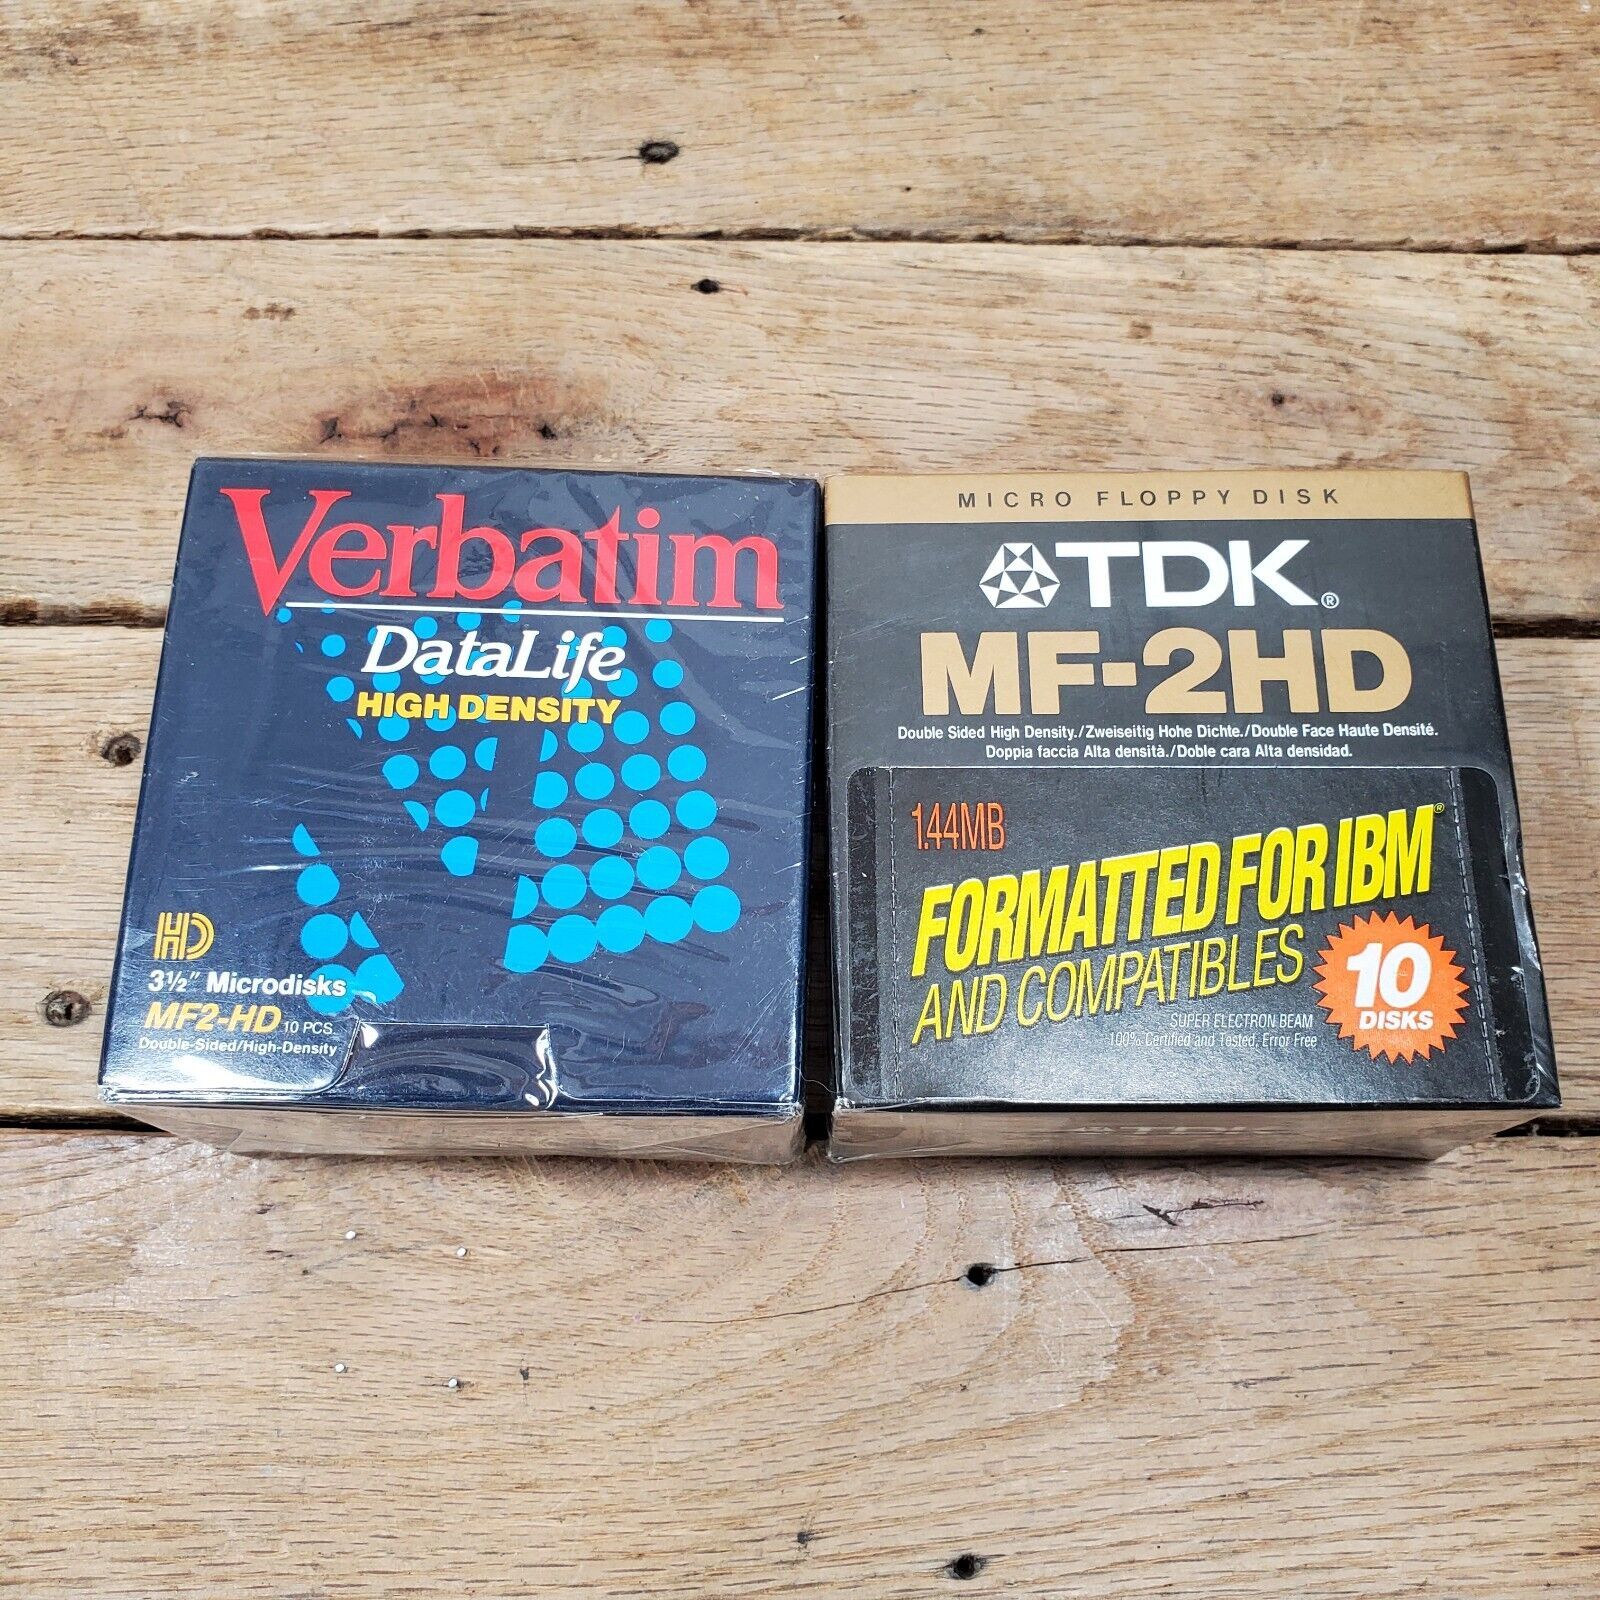 TDK & Verbatim 3.5" Floppy Disks 10 Pack 1.44MB Formatted IBM & Compatibles - $19.75